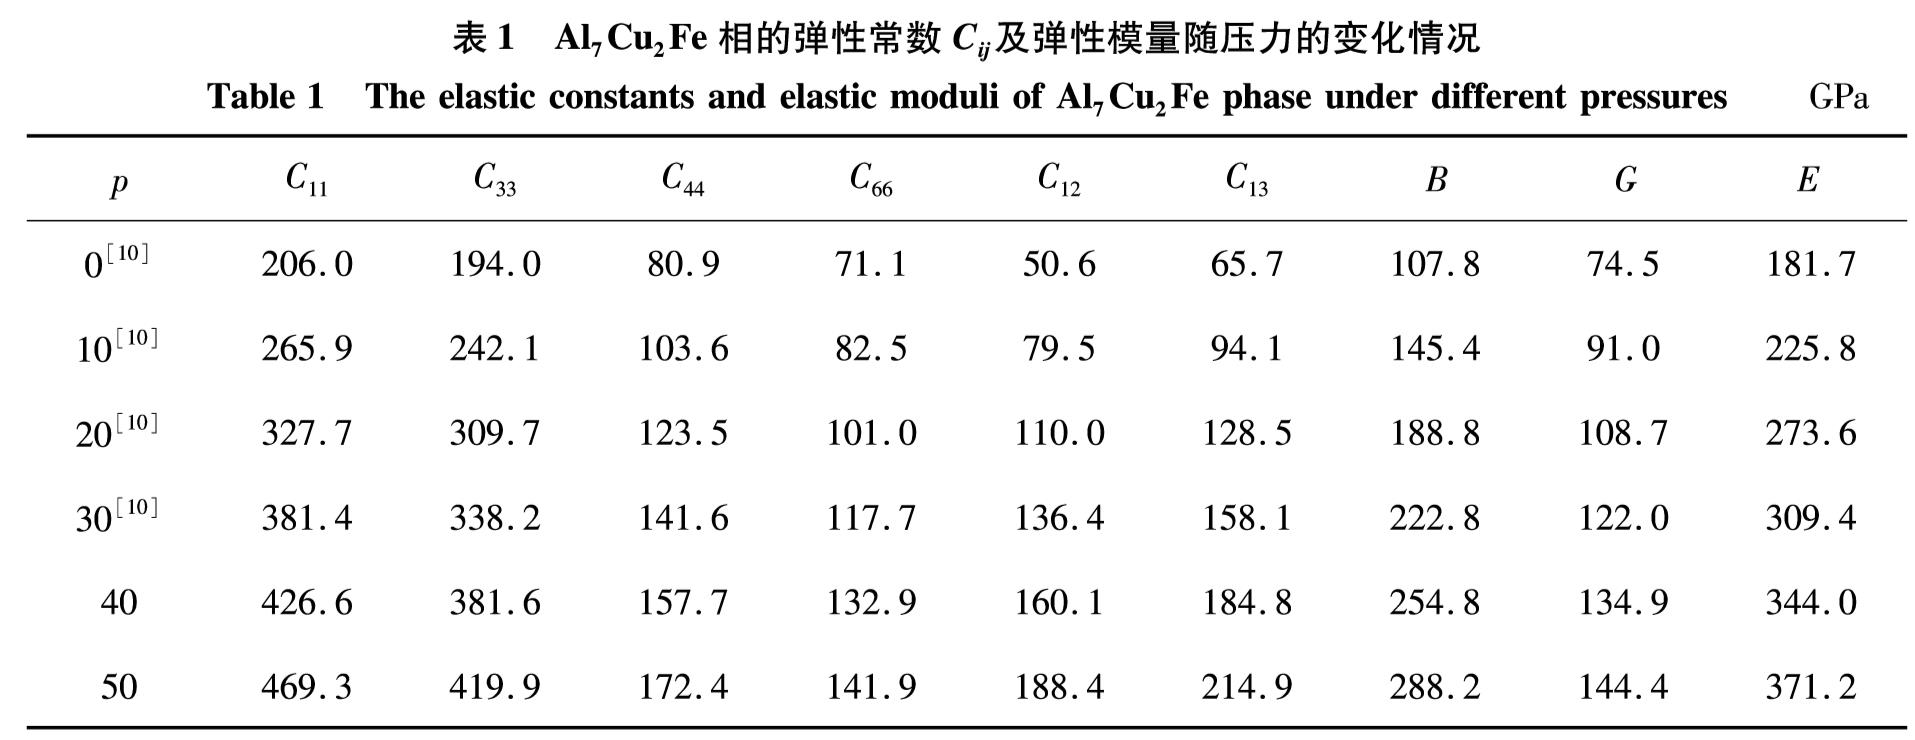 表1 Al7Cu2Fe相的弹性常数Cij及弹性模量随压力的变化情况<br/>Table 1 The elastic constants and elastic moduli of Al7Cu2Fe phase under different pressuresGPa